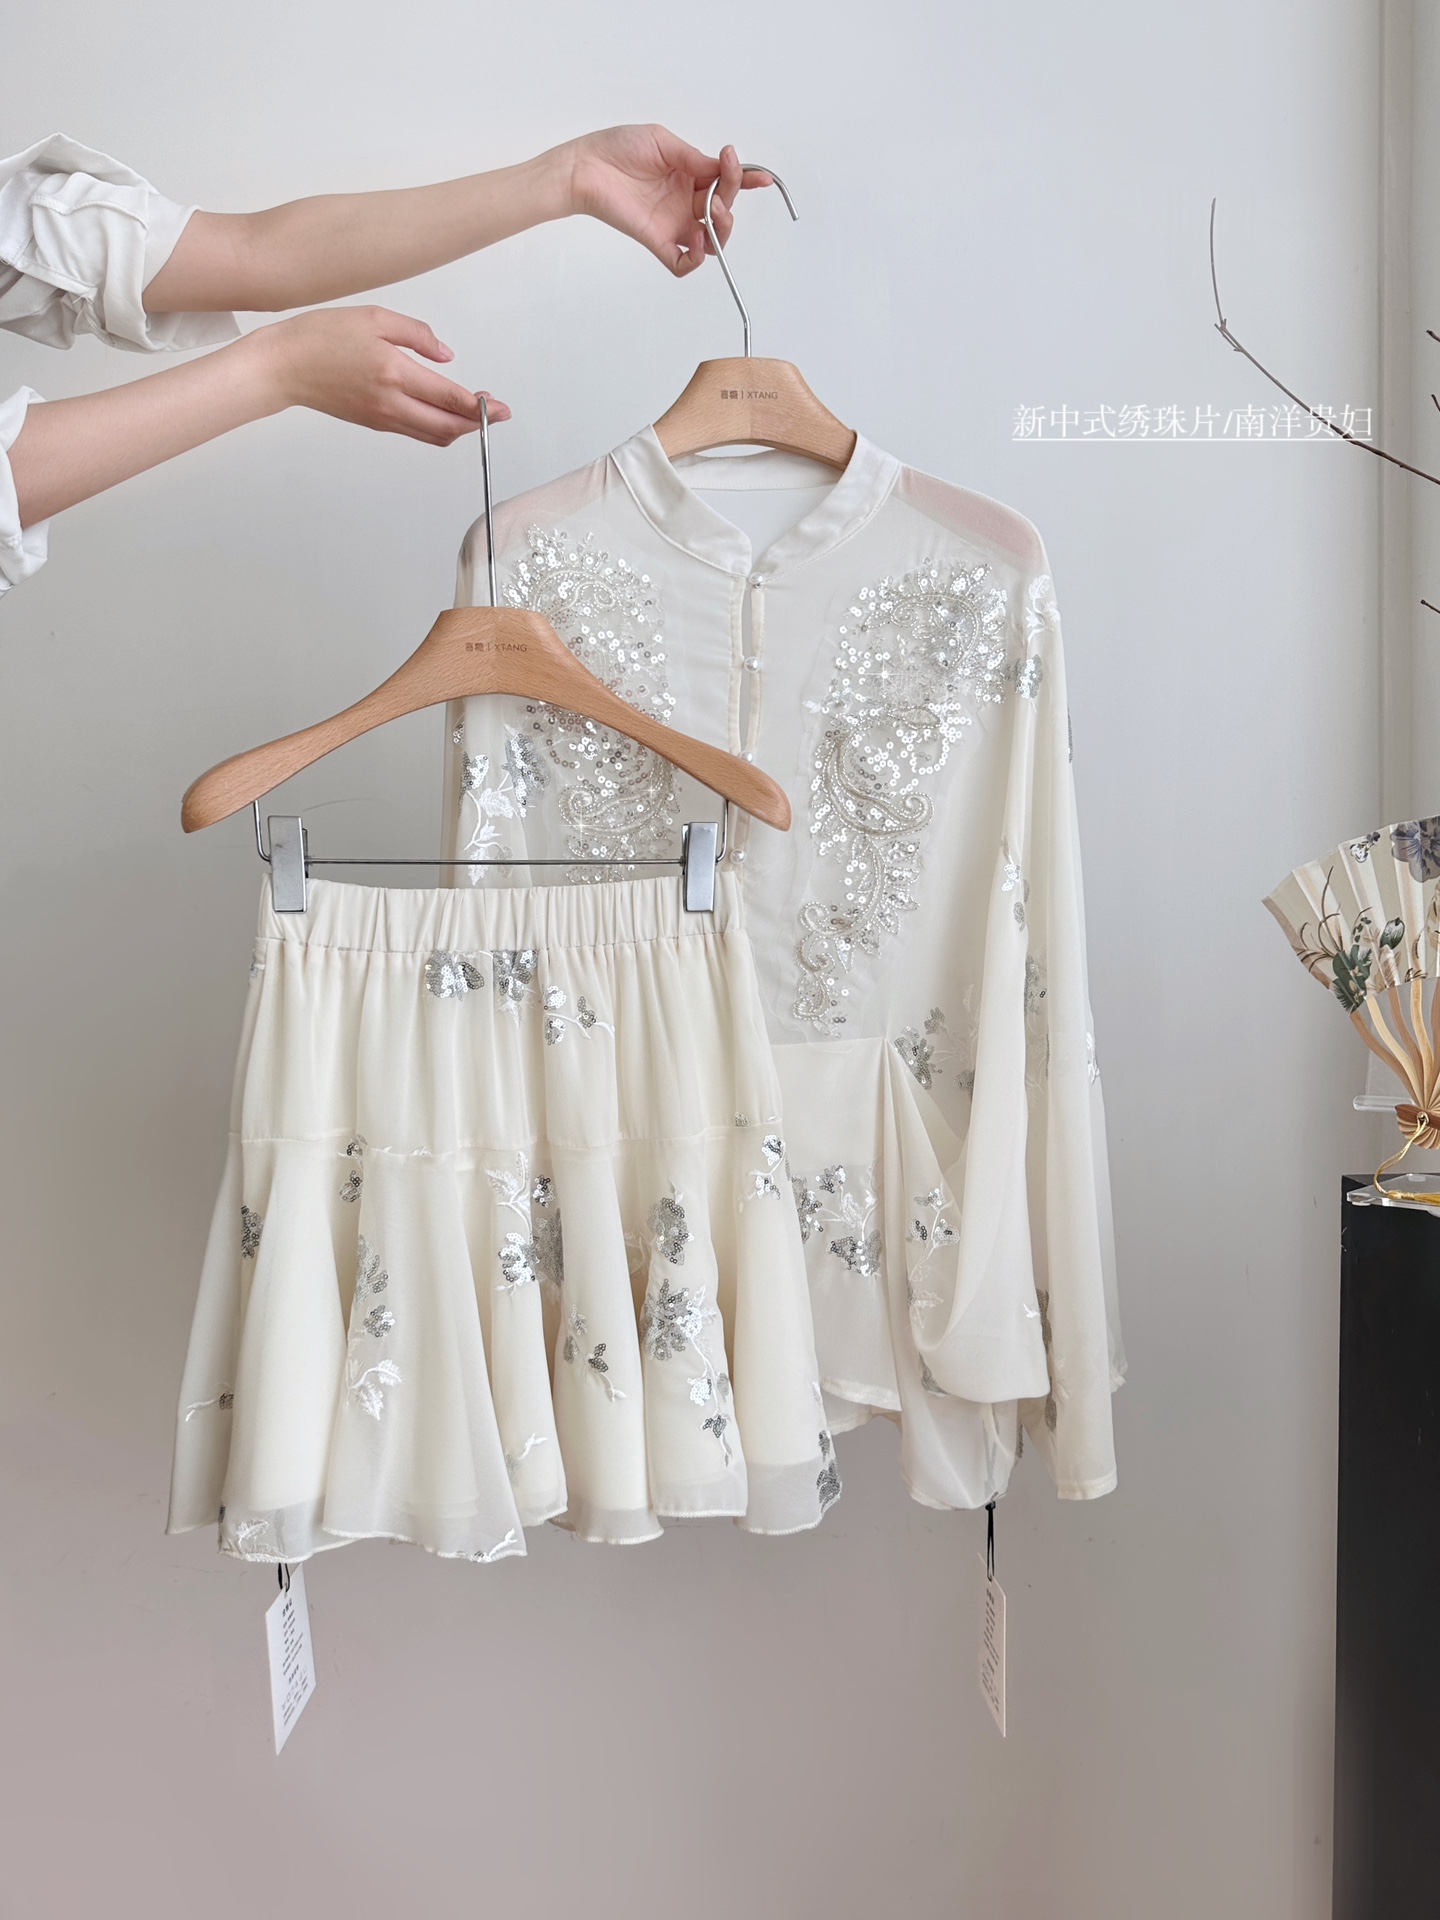 【新款发售】???????????? 新中式银色珠片绣斗篷上衣垂感半身裙套装 高品质????pzldbd SML